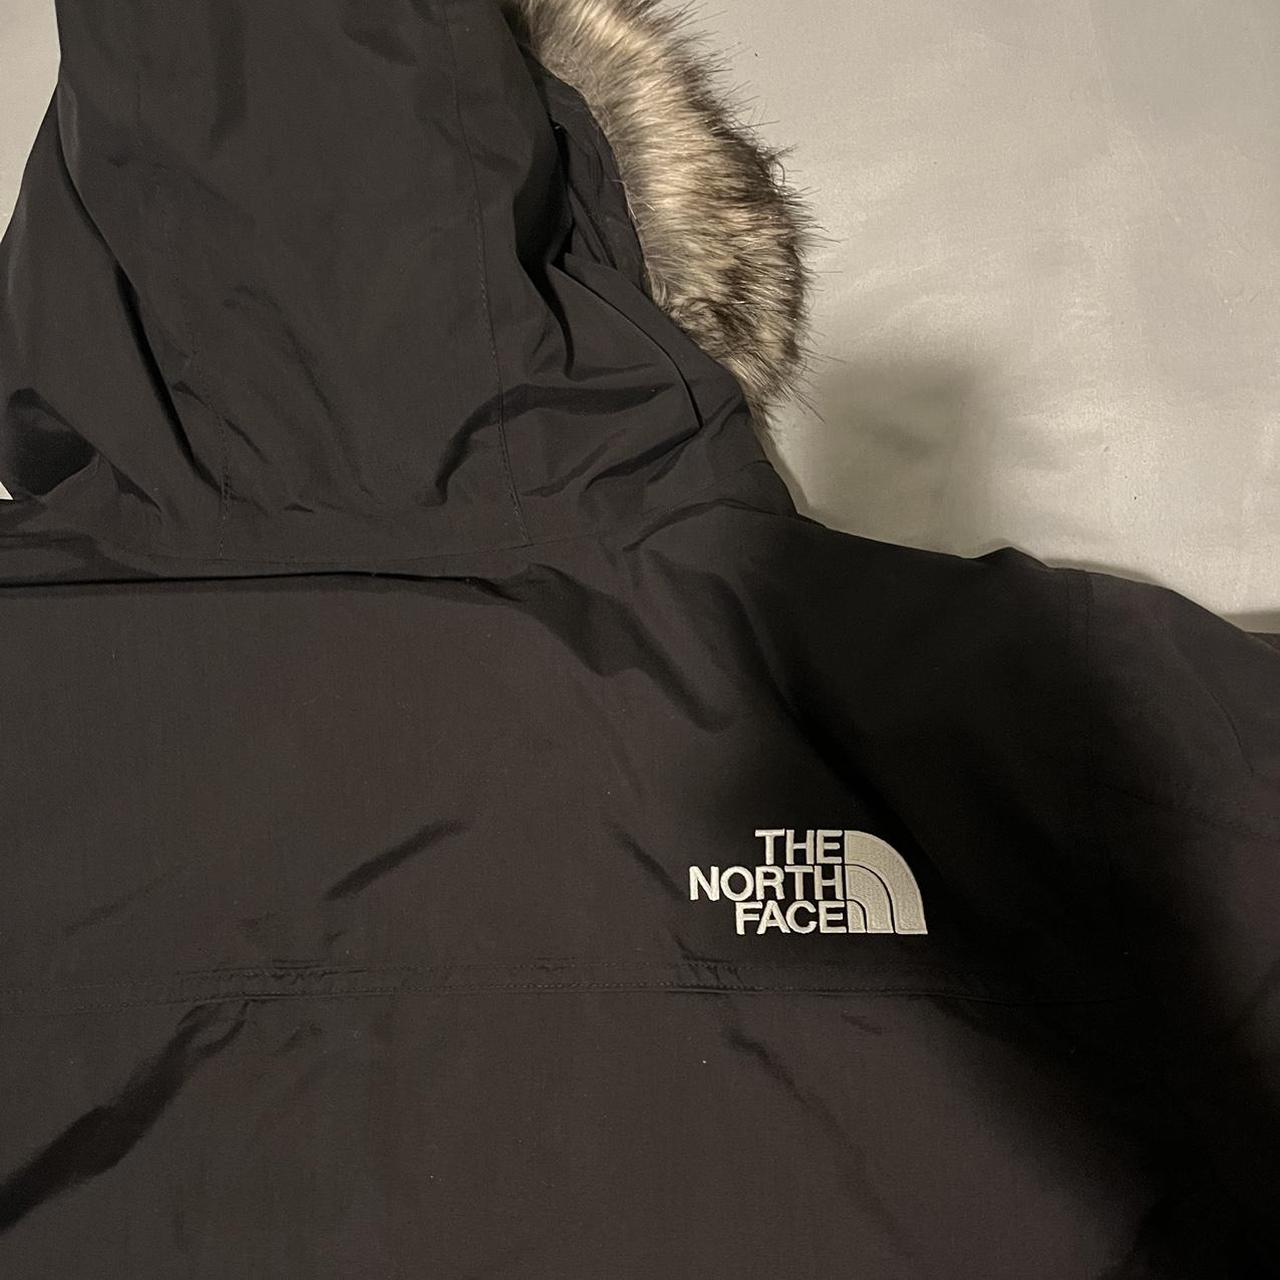 The North Face Men’s McMurdo Parka Fur Jacket Good... - Depop